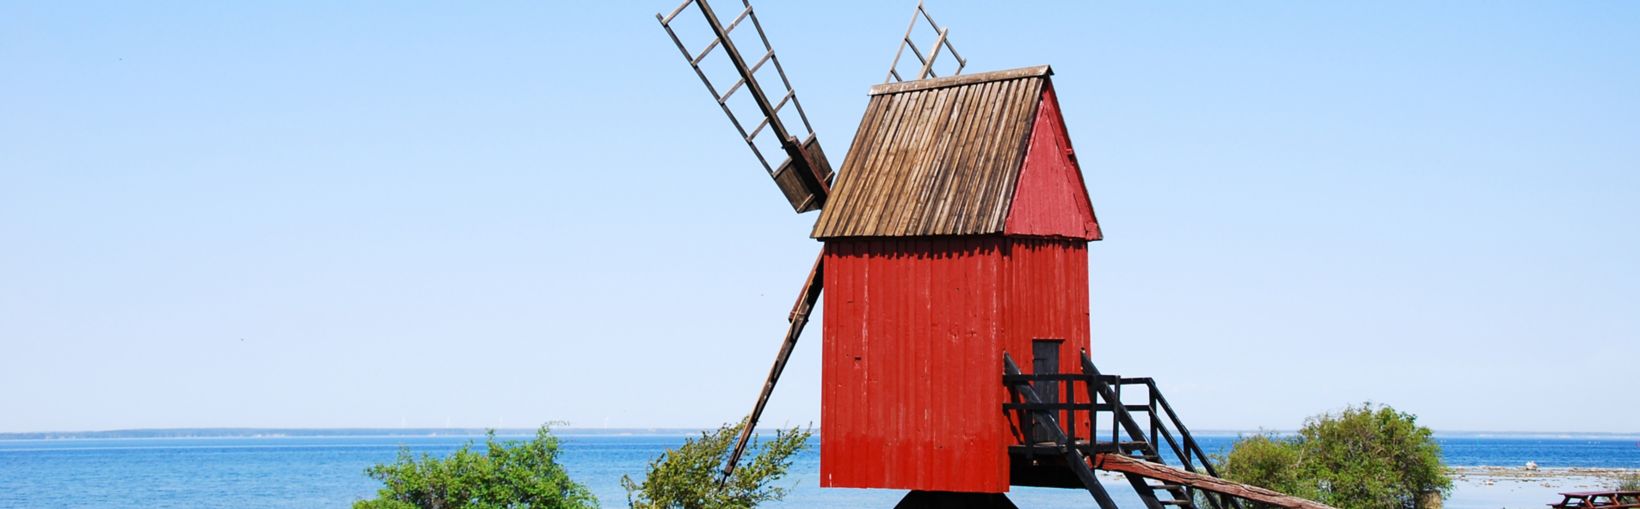 Viejo molino de viento tradicional de madera de color rojo junto a la costa de la isla sueca de Öland